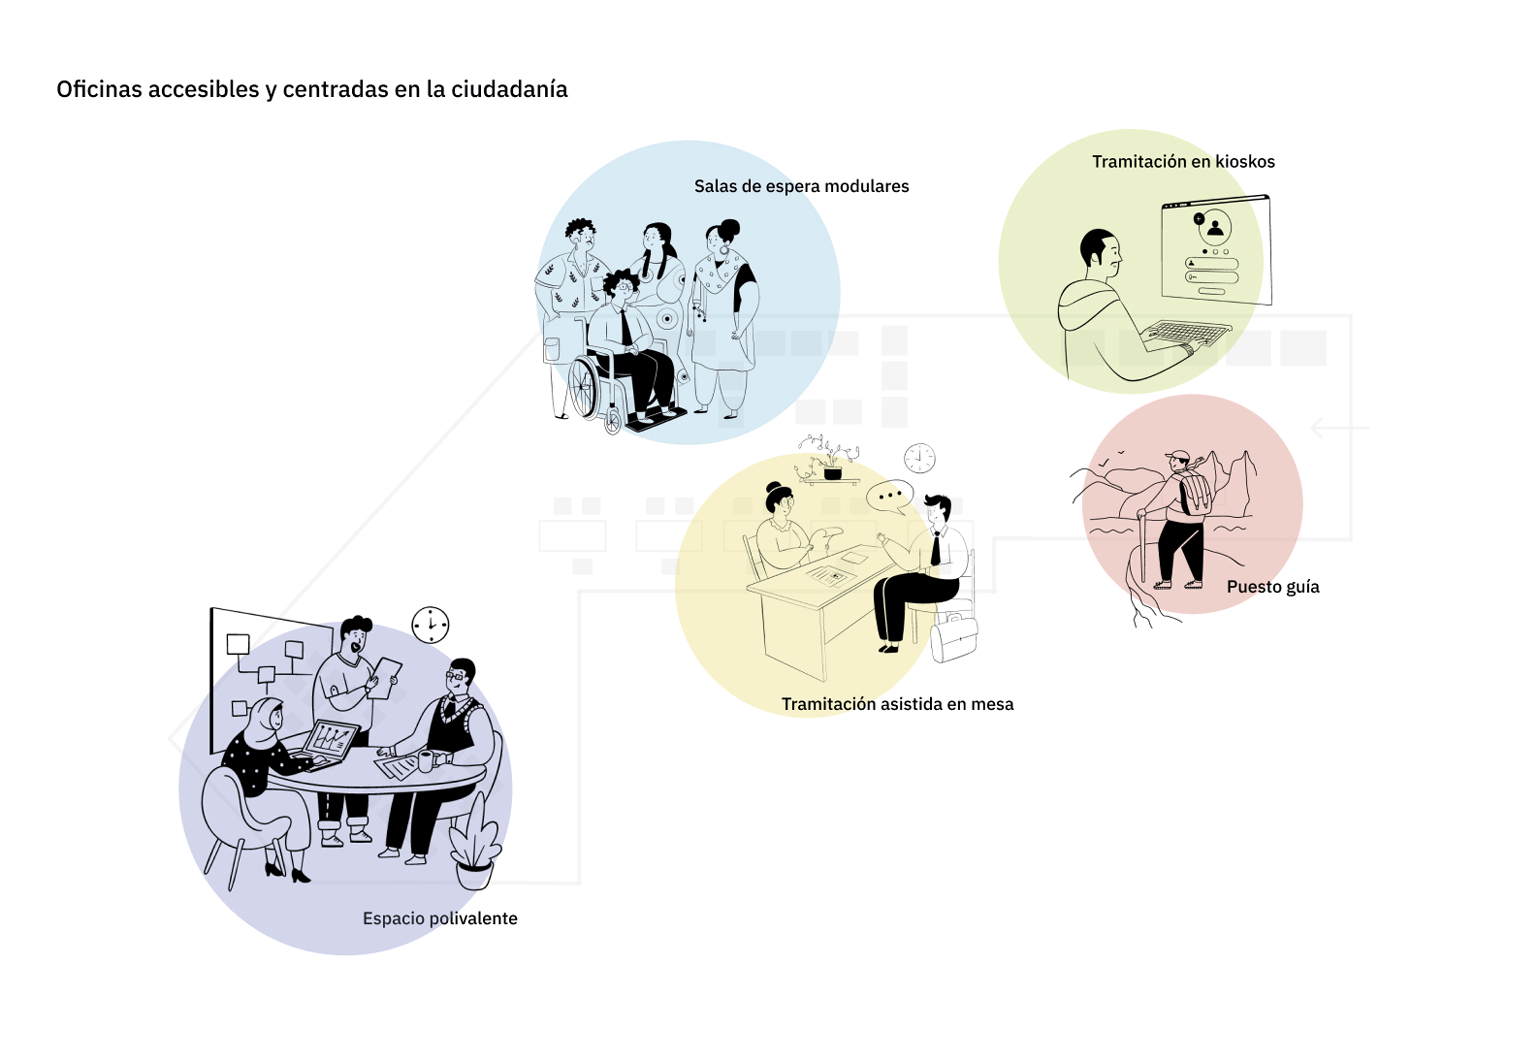 Infografía de la zonificación de los espacios por funciones